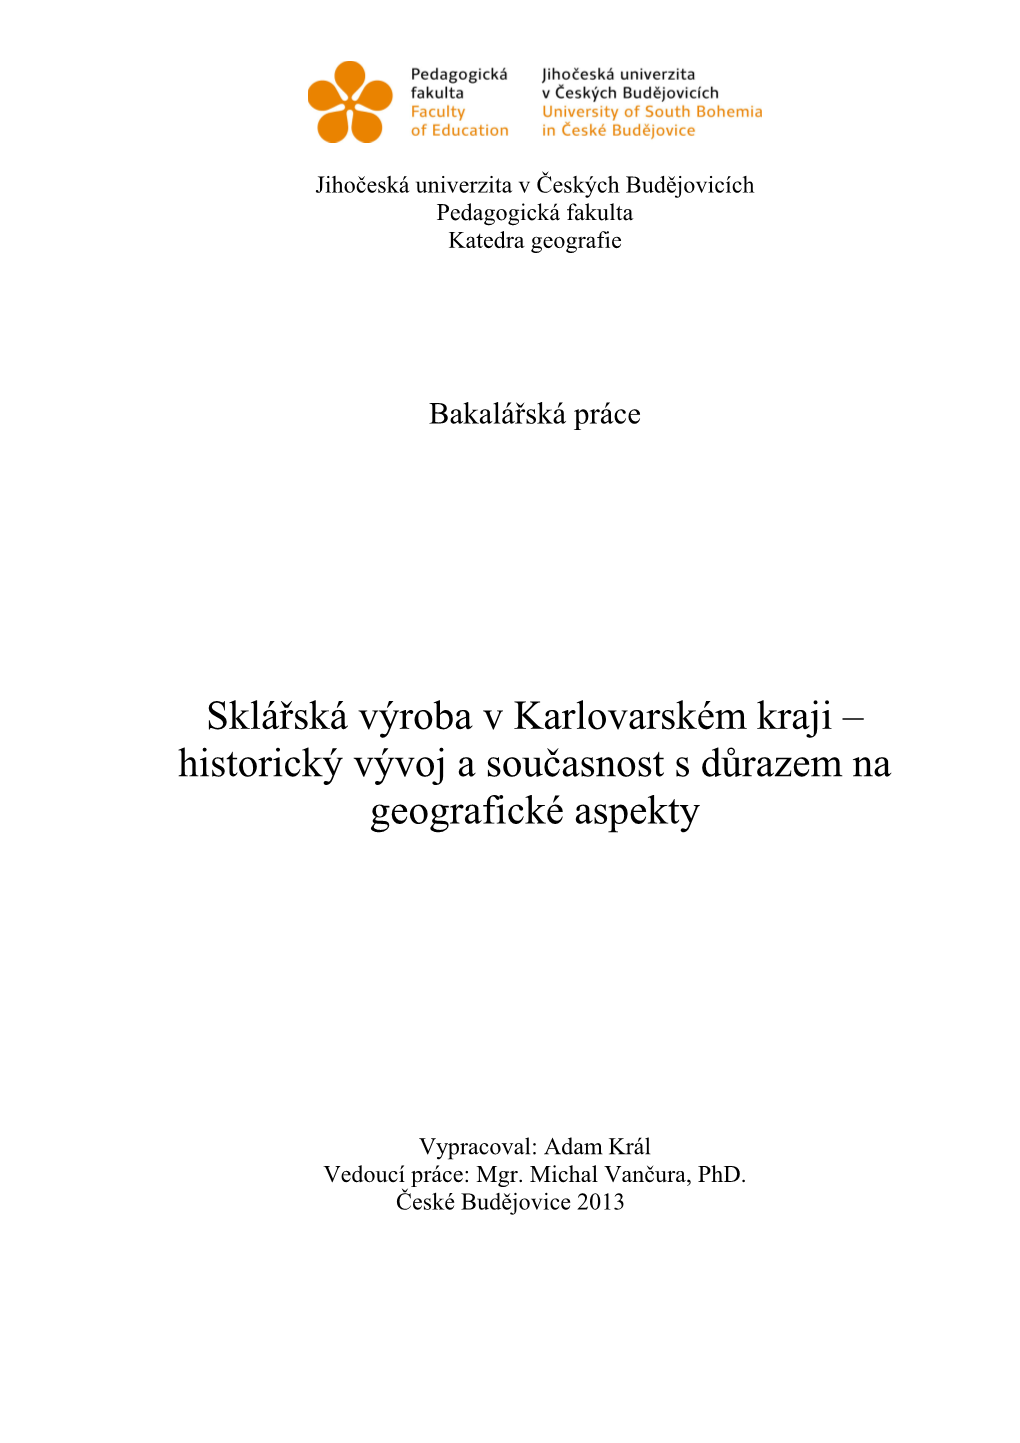 Sklářská Výroba V Karlovarském Kraji – Historický Vývoj a Současnost S Důrazem Na Geografické Aspekty